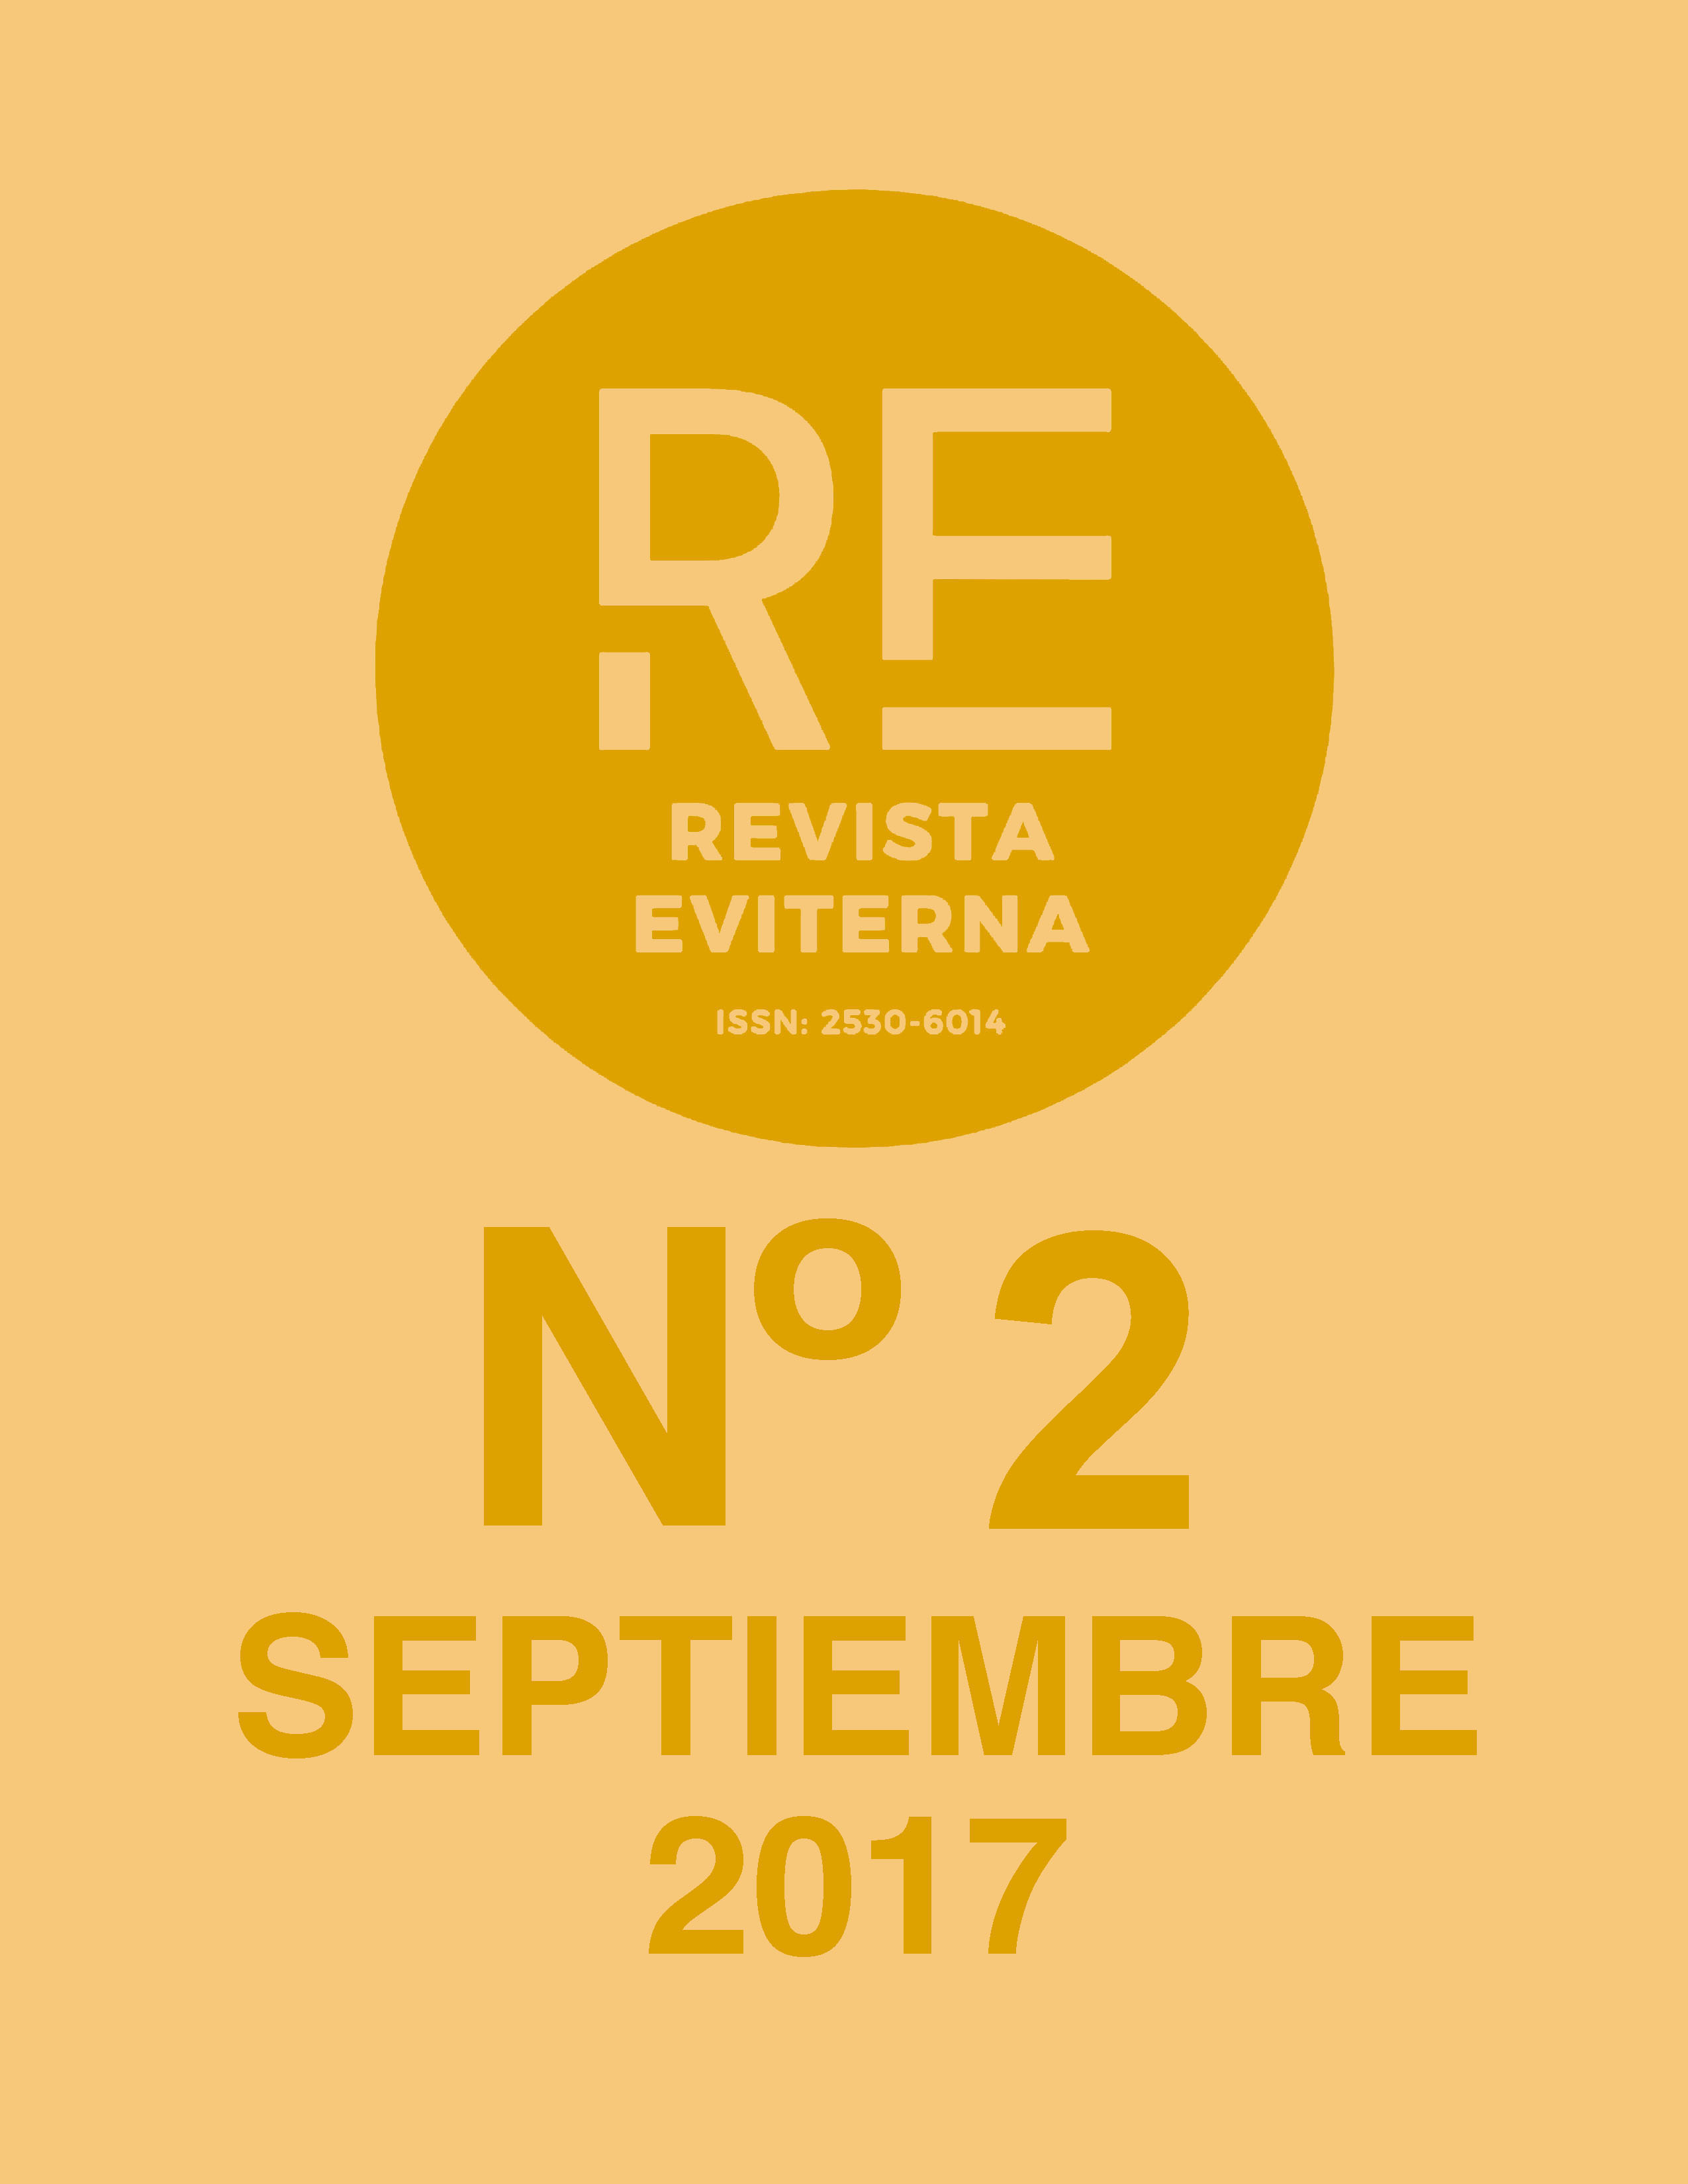 					View No. 2 (2017): Revista Eviterna Nº 2, septiembre 2017
				